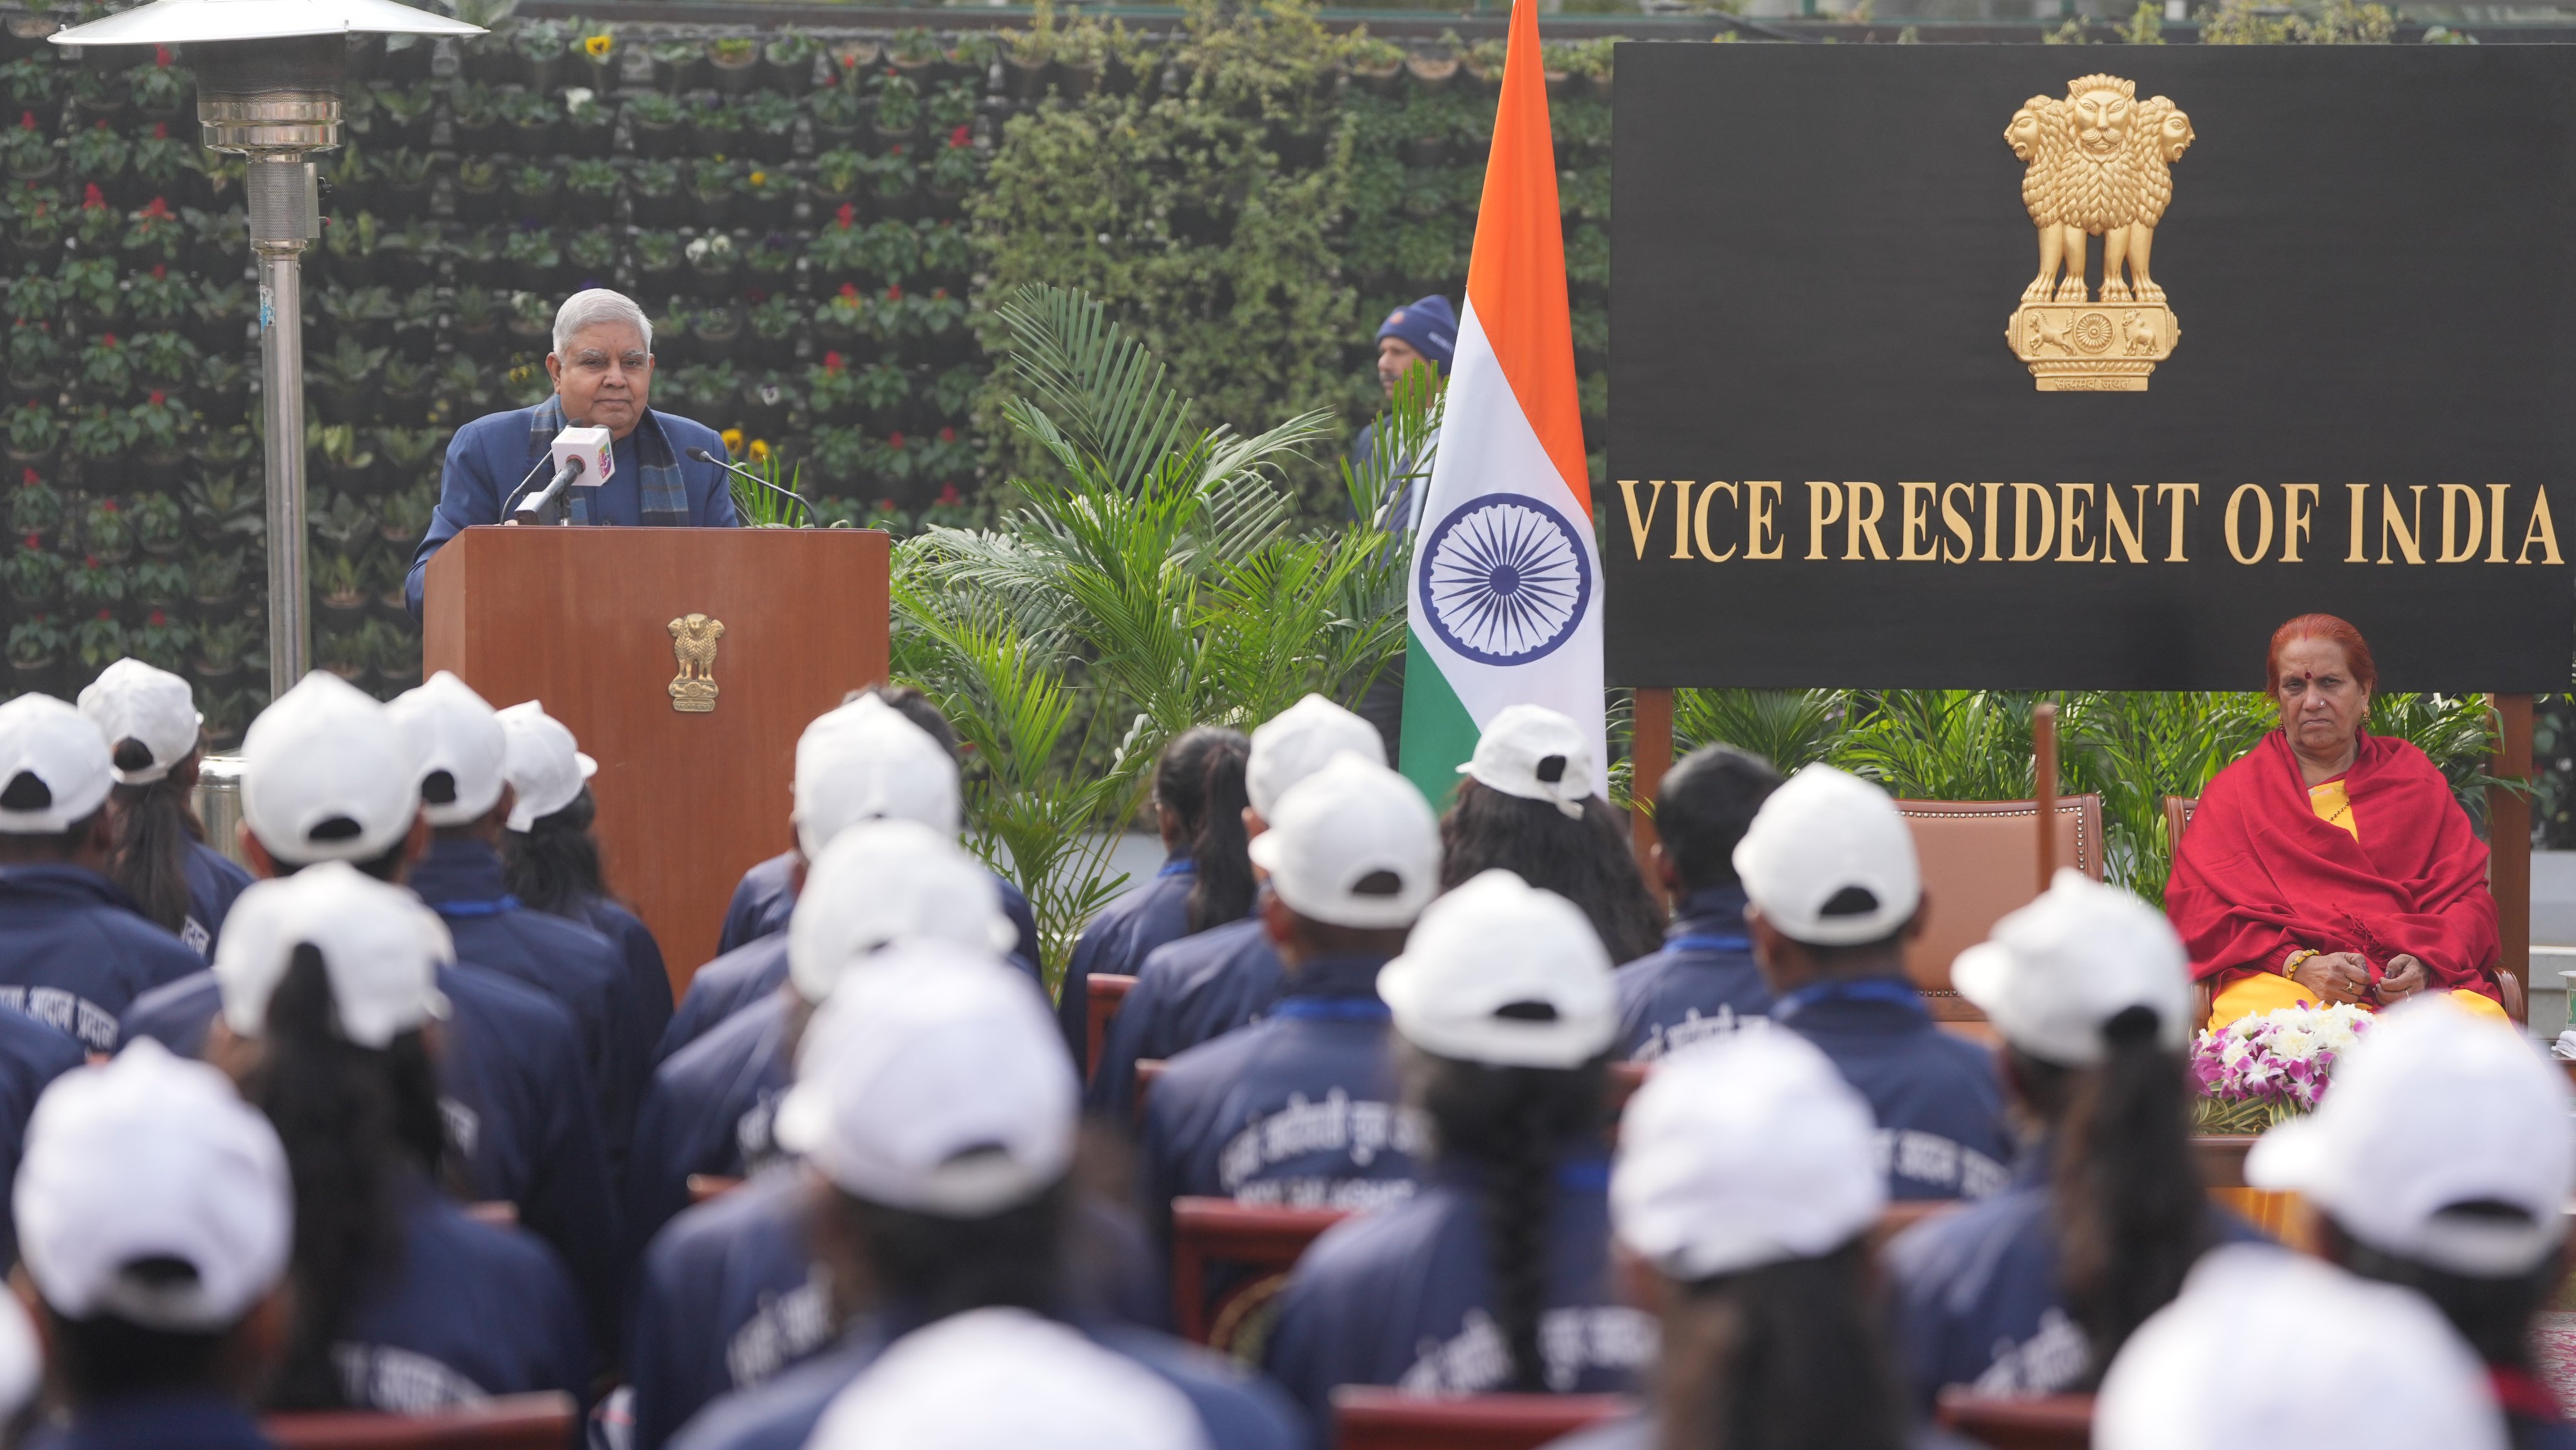 18 जनवरी 2024 को उपराष्ट्रपति निवास, नई दिल्ली में ट्राइबल यूथ एक्सचेंज प्रोगाम (टीवाईईपी) में भाग ले रहे छात्रों के प्रतिनिधिमंडल के साथ वार्तालाप करते हुए उपराष्ट्रपति श्री जगदीप धनखड़।